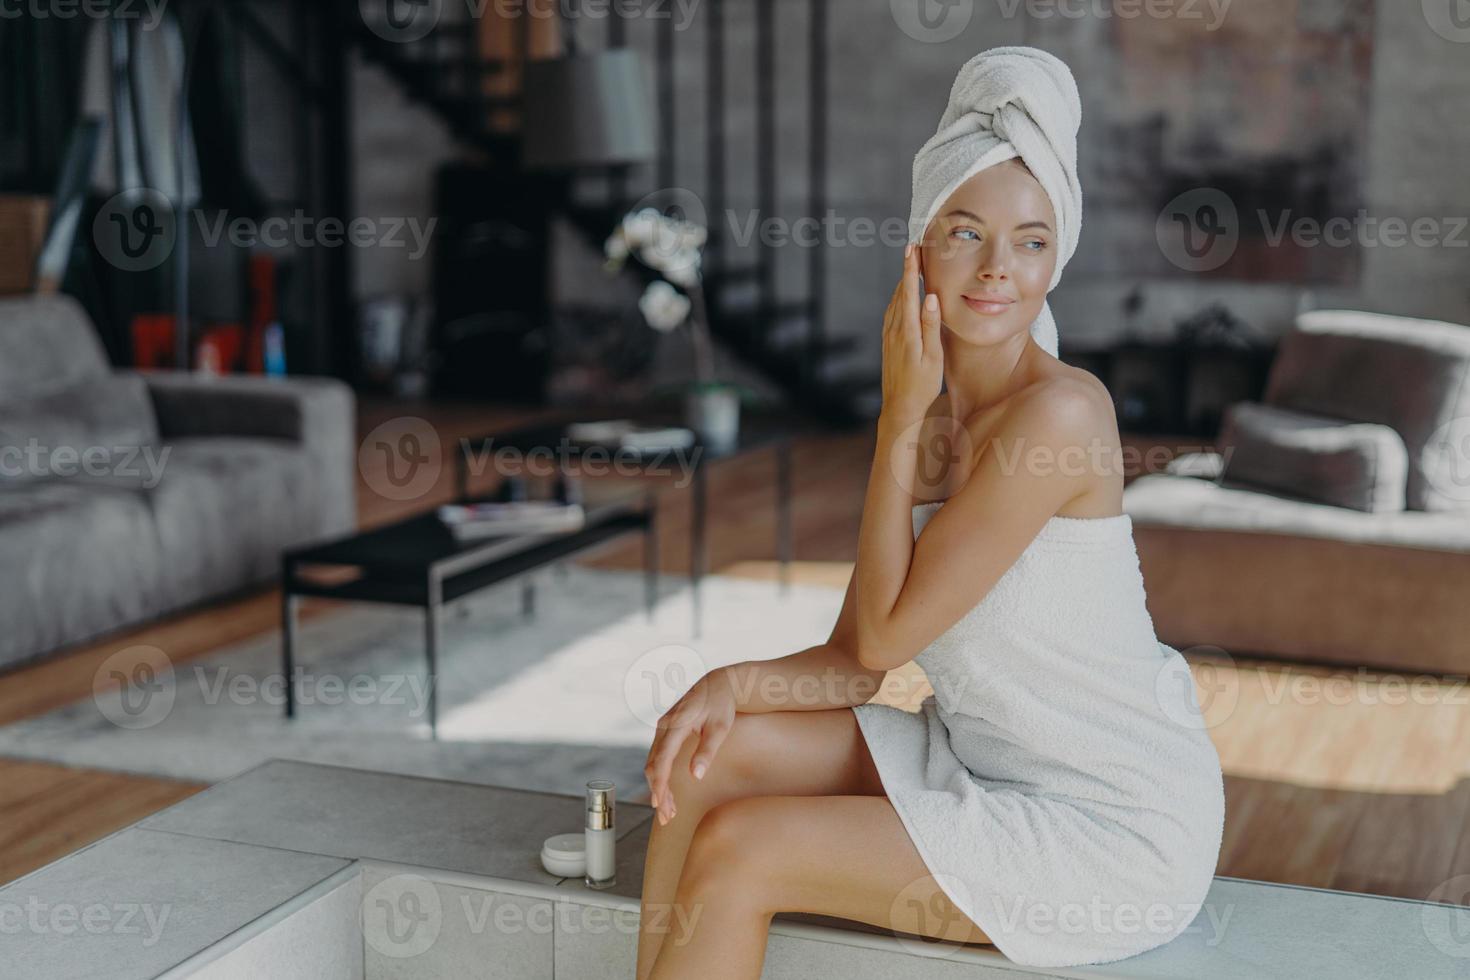 mulheres, cosmetologia, conceito de beleza e higiene. mulher pensativa relaxada envolta em toalha de banho, aplica creme anti-rugas ou loção corporal, posa na sala de estar em casa, parece pensativa foto